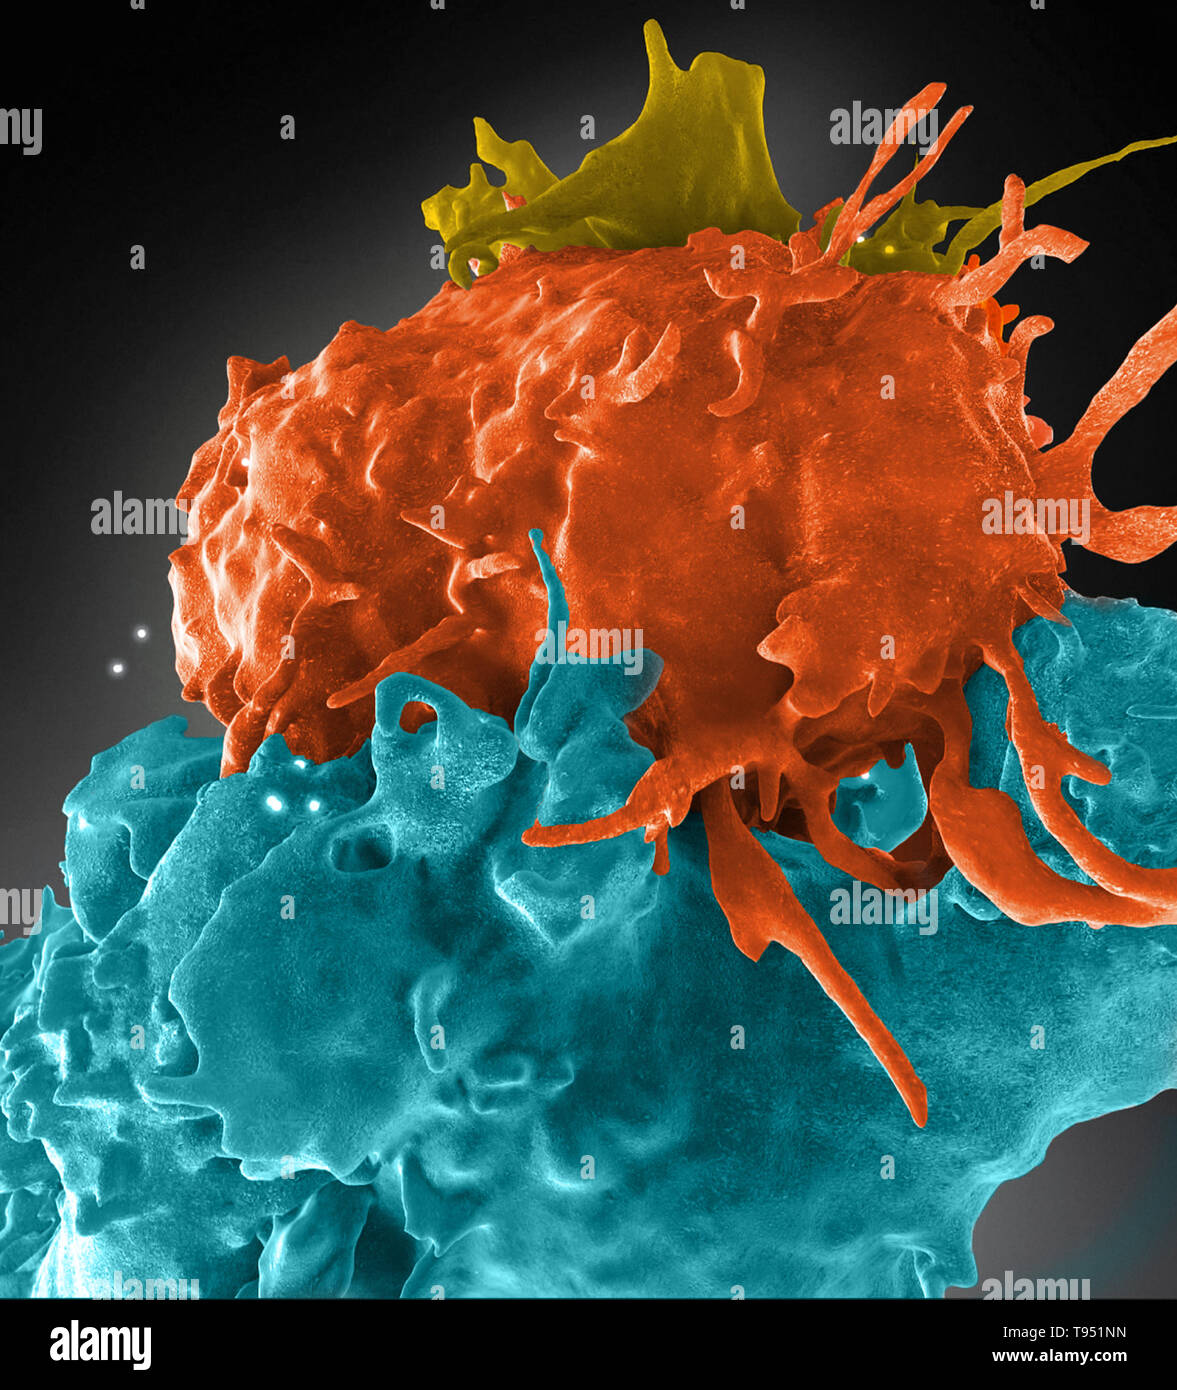 Estructura tridimensional de infectados por el VIH (azul, verde y marrón, púrpura (no infectados) las células T interactuando. Una celda (marrón) ha envuelto una extensión alrededor de su vecino no infectadas (morado) para llegar a una célula infectada (azul). El síndrome de inmunodeficiencia adquirida (SIDA) es una enfermedad crónica y potencialmente mortal causada por el virus de la inmunodeficiencia humana (VIH). Por dañar tu sistema inmunitario, el VIH interfiere con la capacidad del cuerpo para luchar contra los organismos que causan la enfermedad. Foto de stock